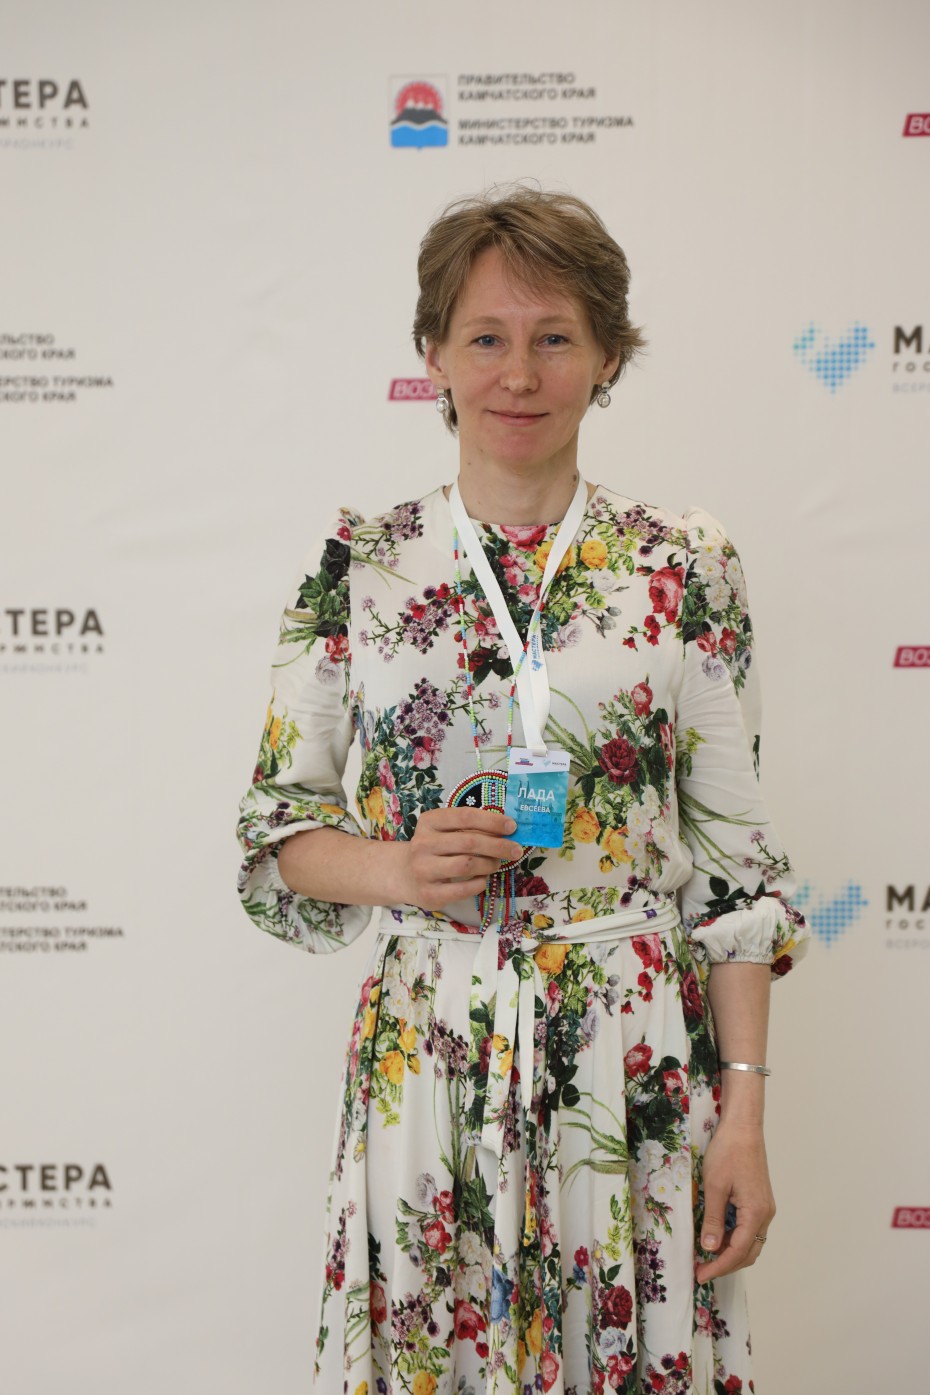 Якутянка Лада Евсеева поборется за победу в конкурсе "Мастера гостеприимства"